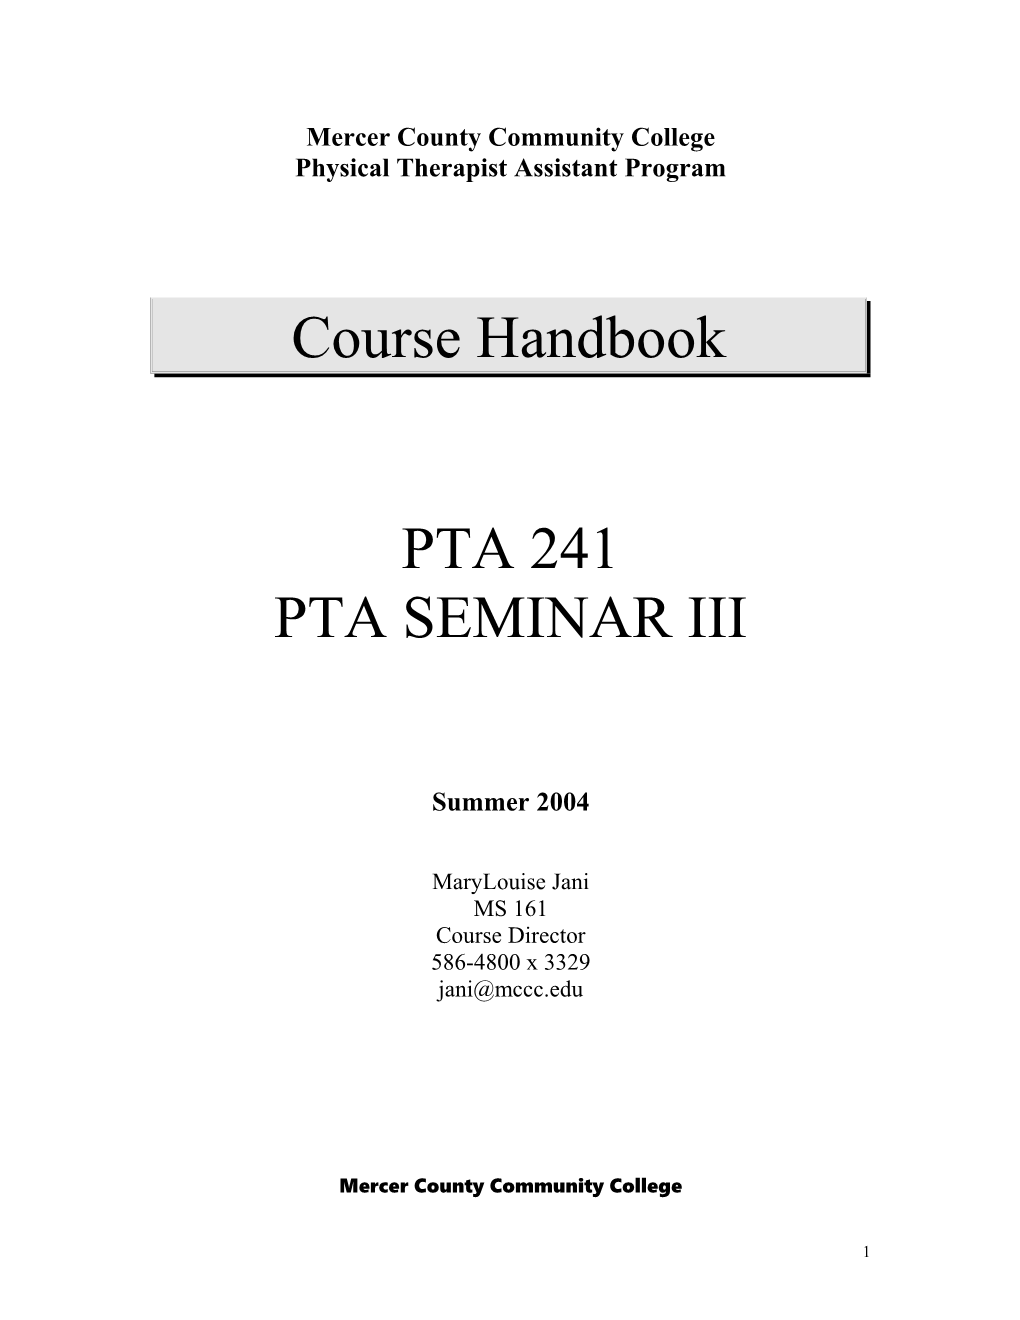 PA 241 PTA Seminar III